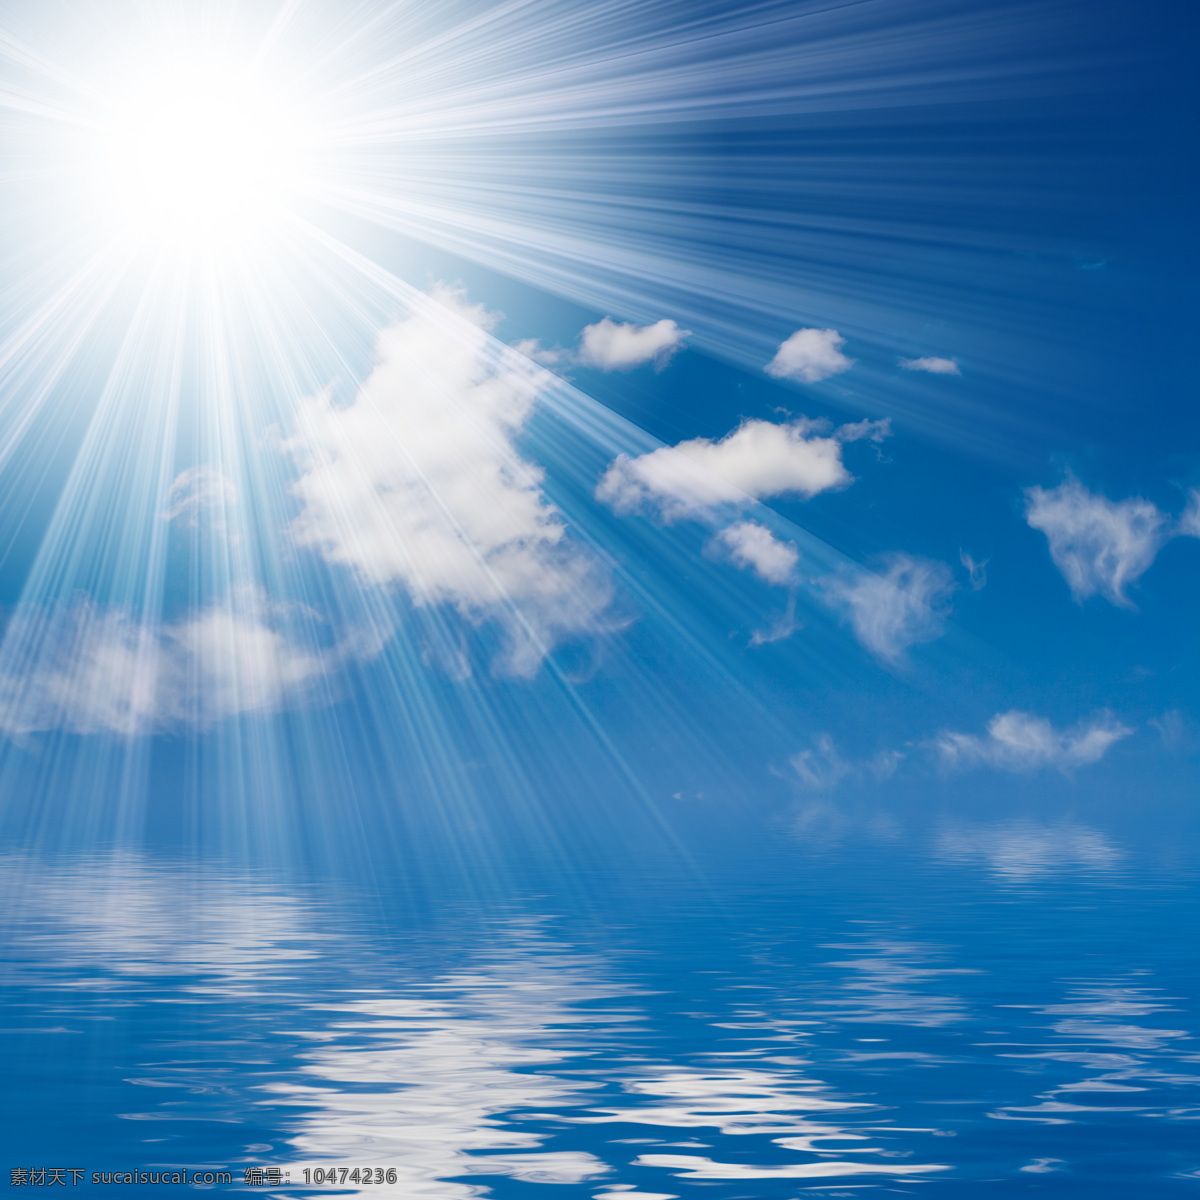 阳光 水面 高清 光芒 太阳光 照射 蓝天白云 倒影 高清图片 天空云彩 自然景观 蓝色